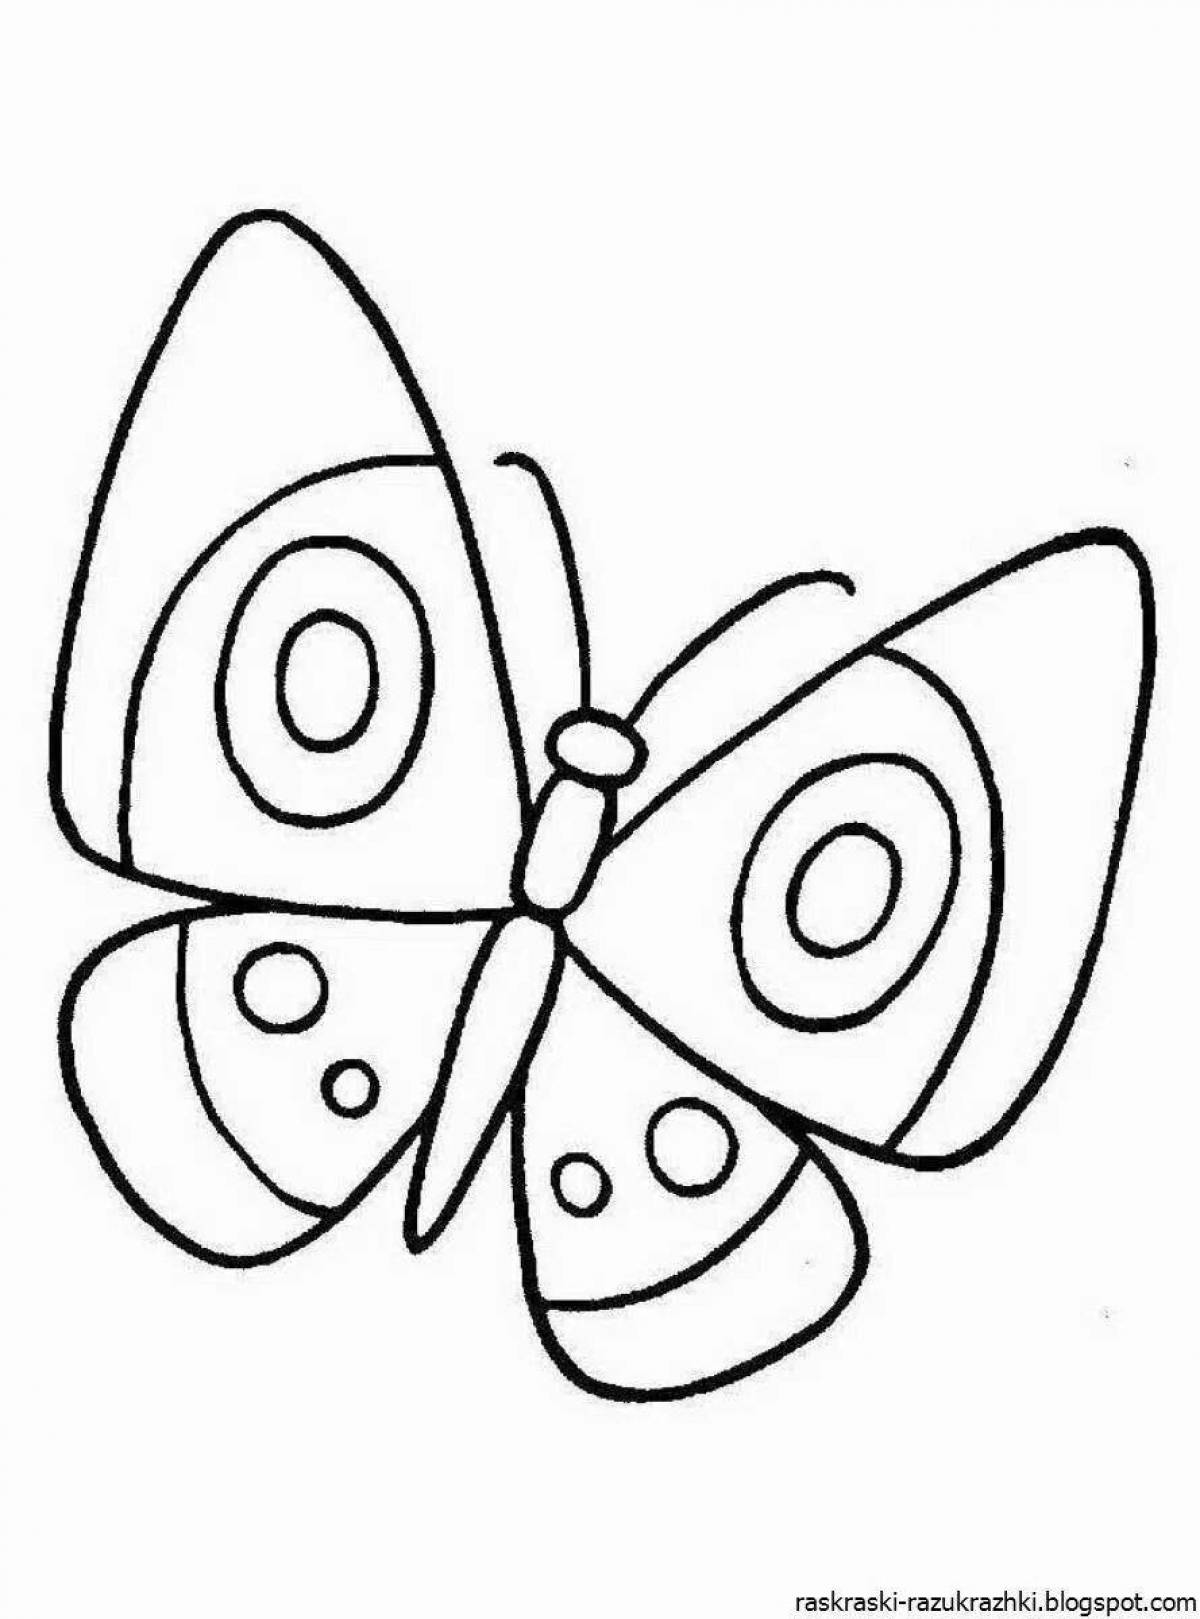 Великолепная раскраска бабочки для детей